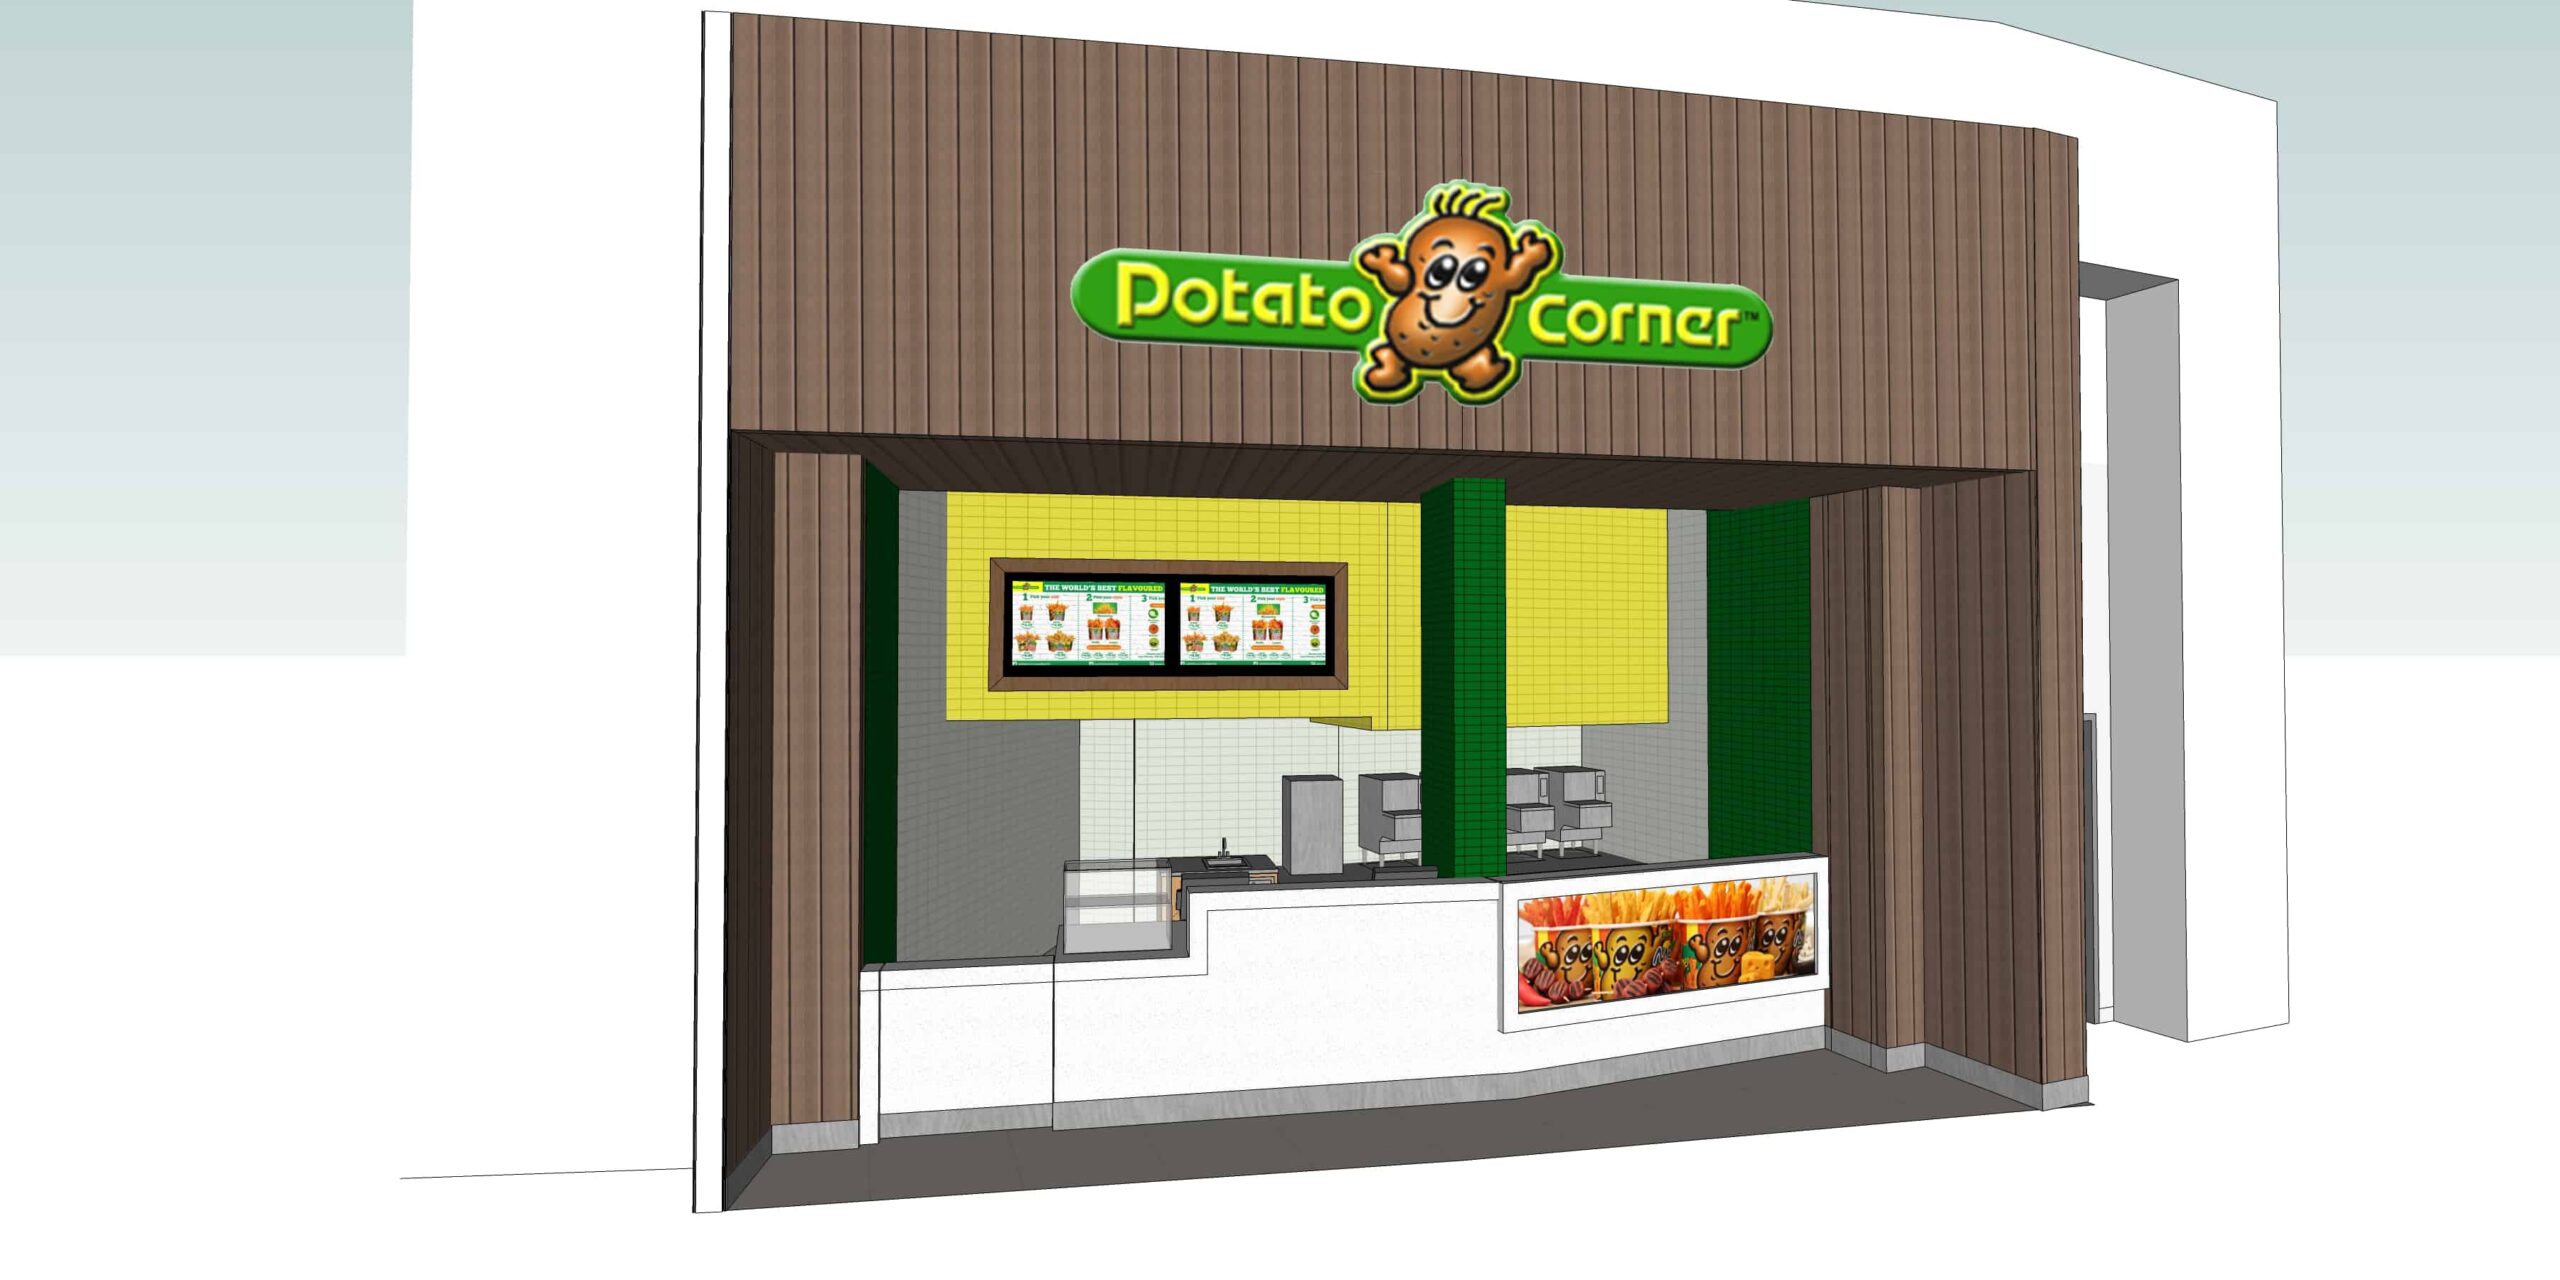 Potato Corner – Chinook Mall